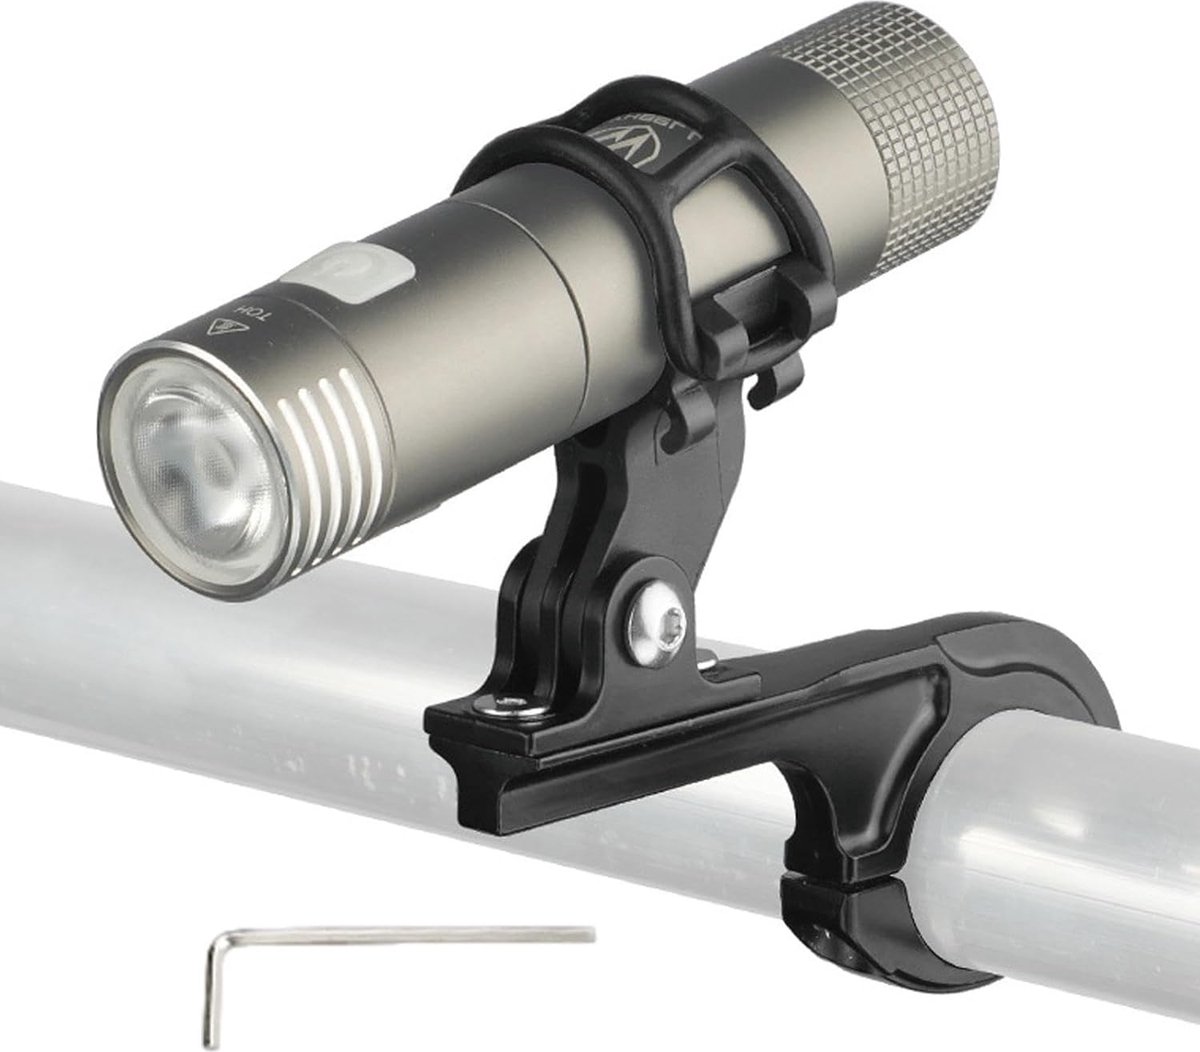 Fiets Zaklamp Mount Houder | Stuurlamp Houder Universele Fietskoplamp Houder - Stuurlamphouder, antislip stuurlamphouder voor motorfiets, fiets